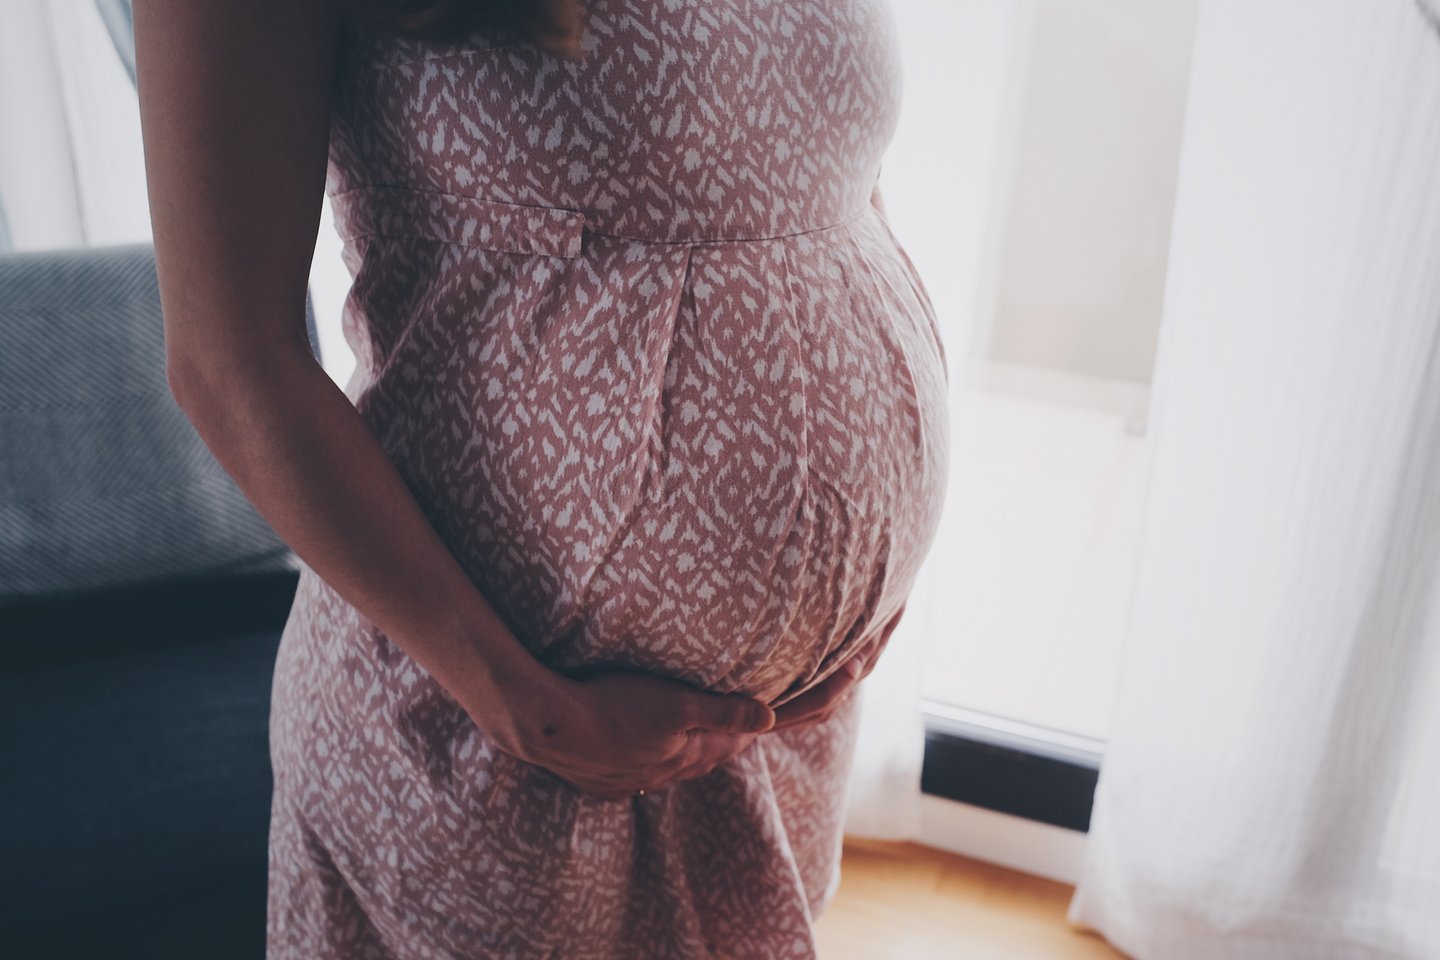  Įvairių klausimų turi ne tik planuojančios nėštumą, bet ir pastojusios moterys, o ypač tos, kurios pastojo neplanuotai – žinant atsakymus į dažniausius klausimus nėštumo laikotarpis gali praeiti daug sklandžiau, patiriant mažiau nerimo.<br>„Unsplash“ nuotr.